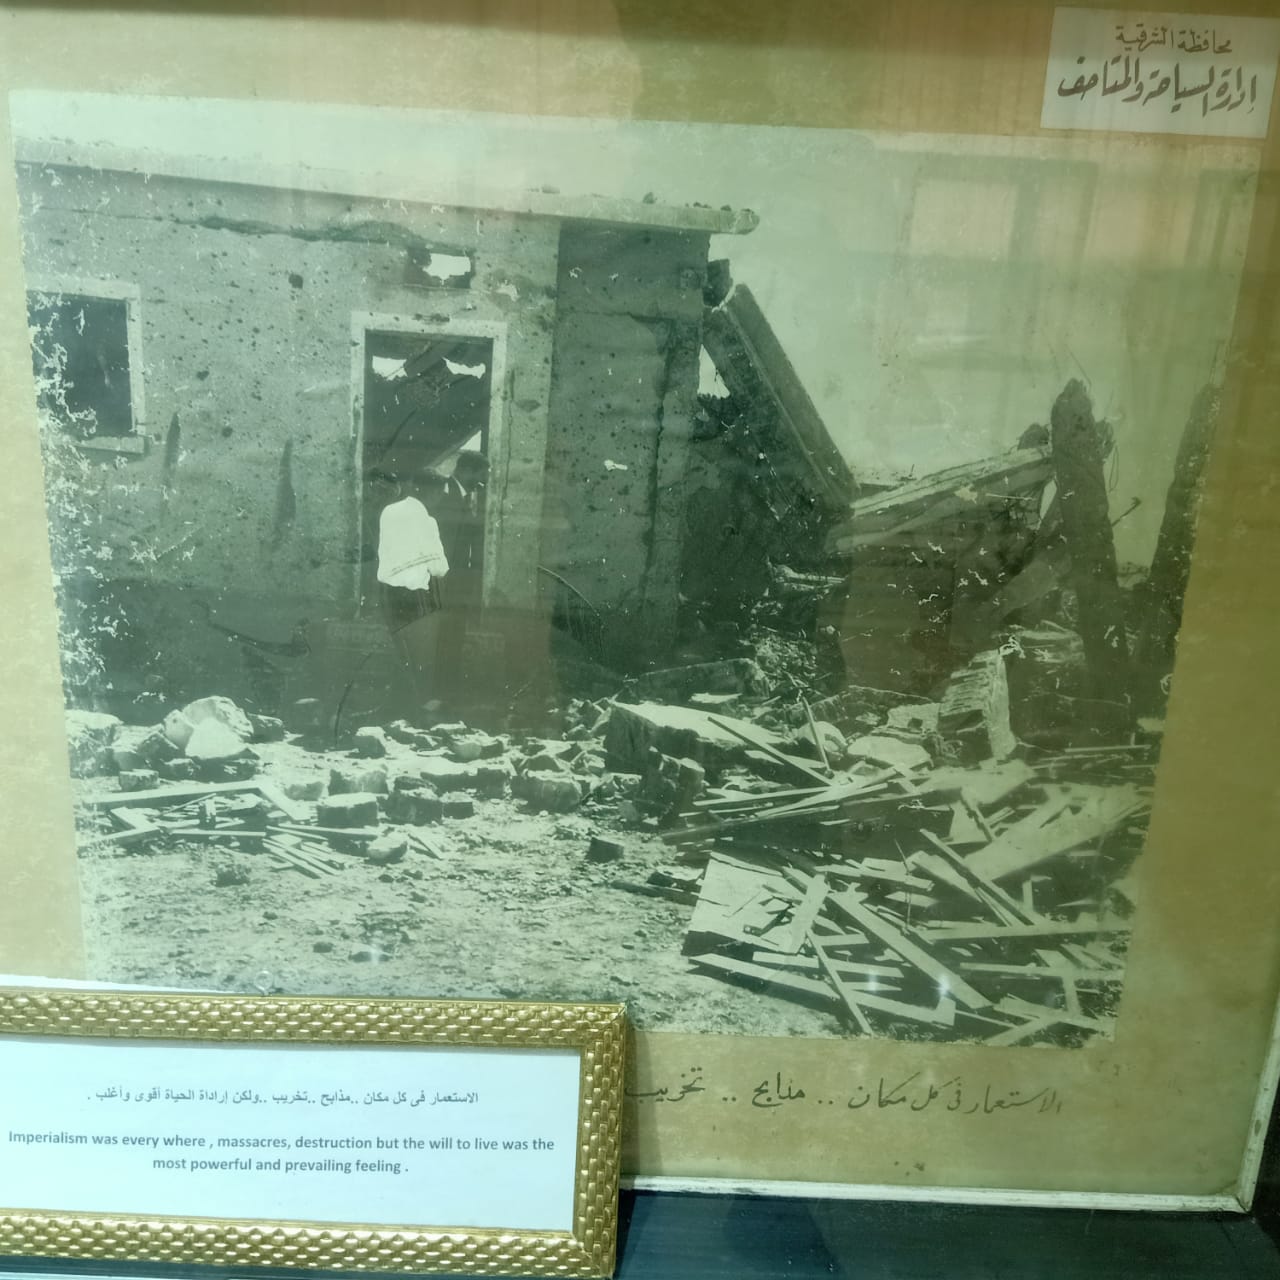  كتب وكراسات وملابس شهداء مذبحة بحر البقر بمتحف المدرسة (5)